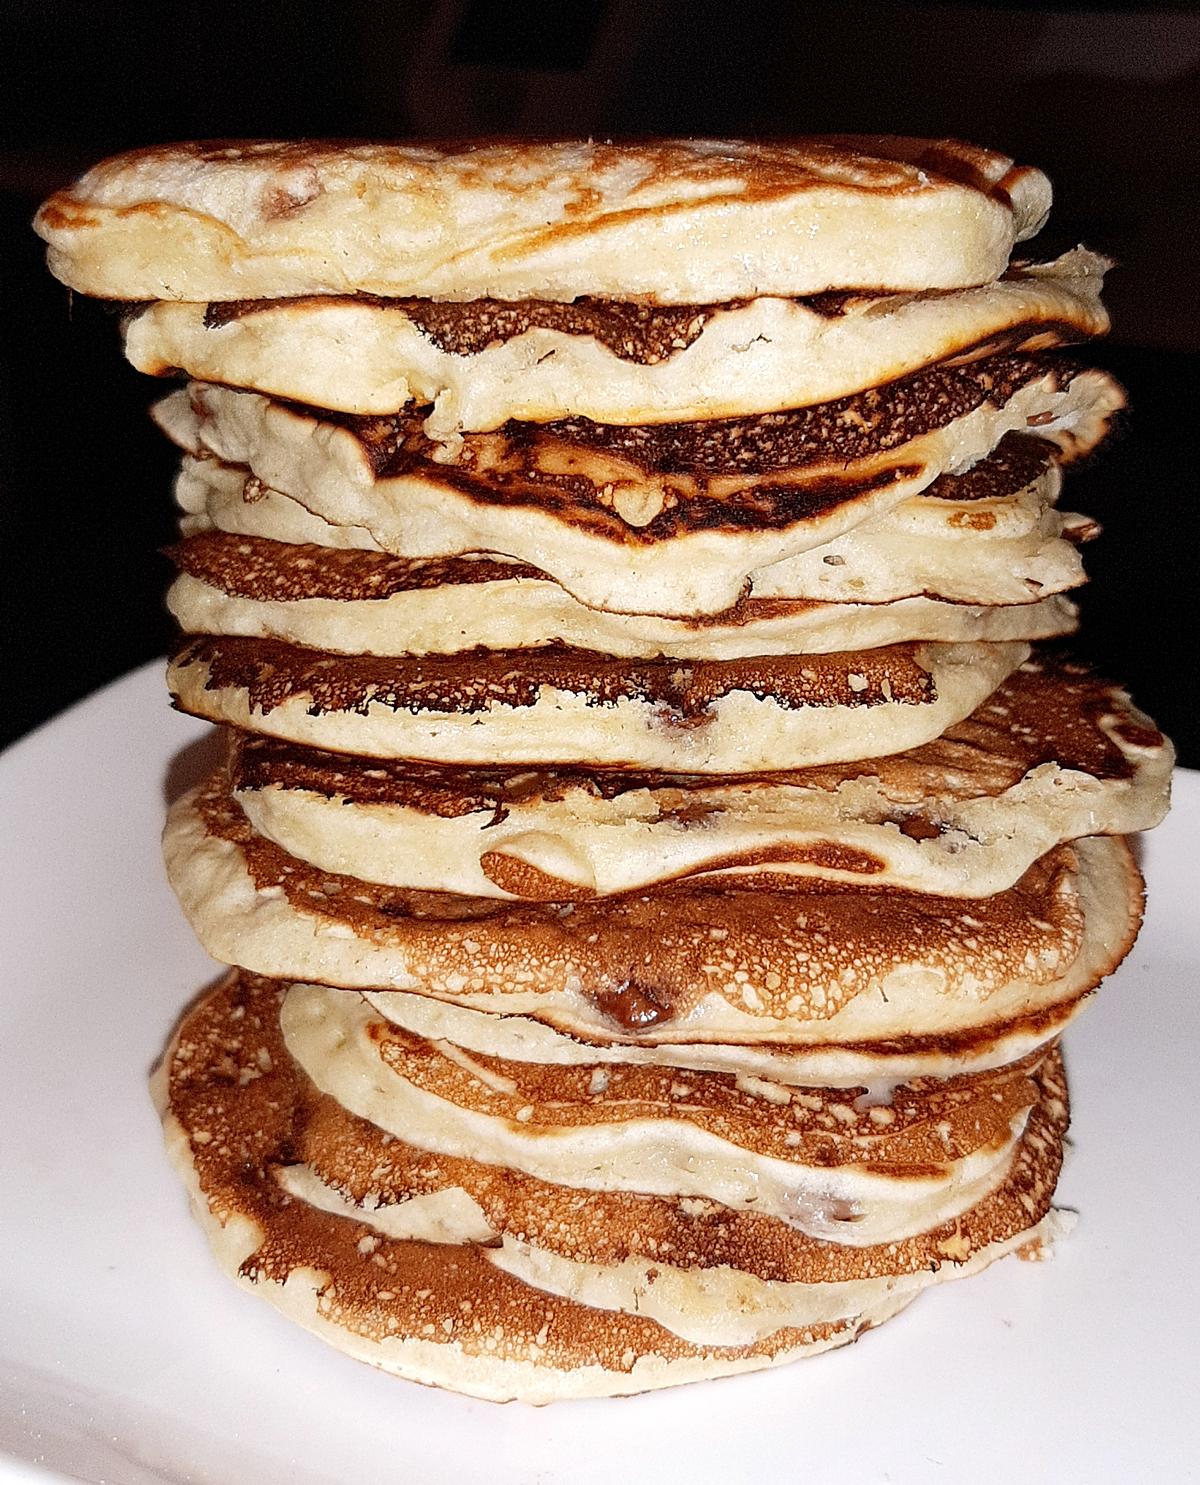 recette Ma Tour de Pancakes au pépites de chocolat